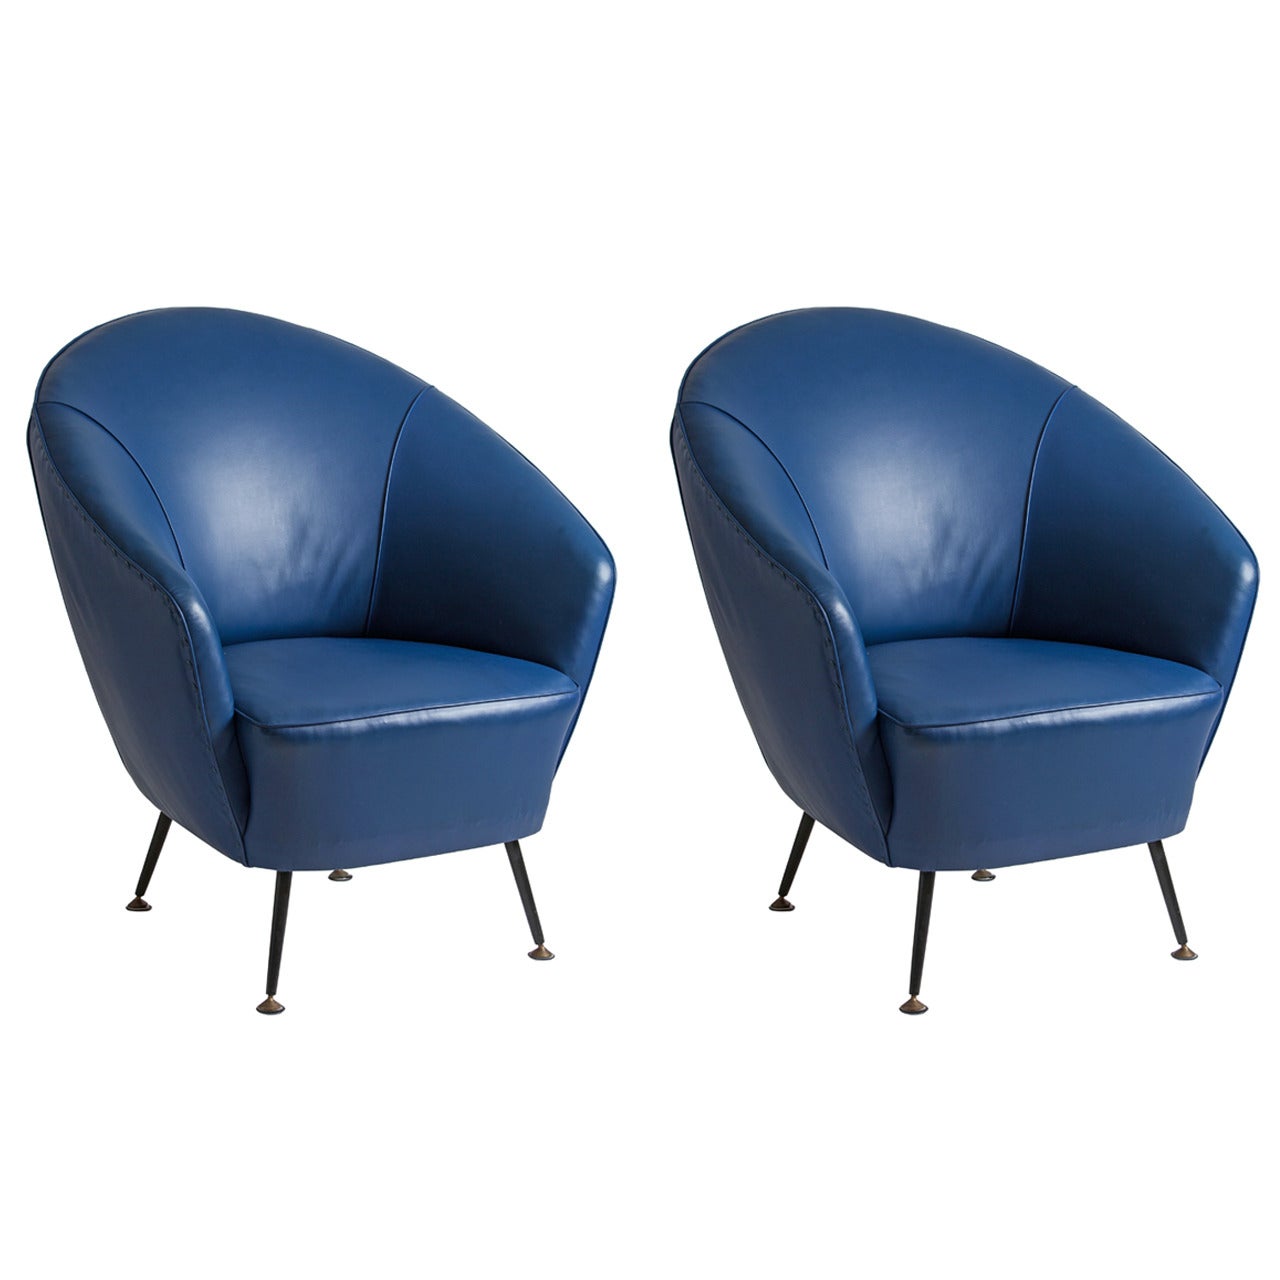 Pair of Gio Ponti or Ico Parisi Style Chairs